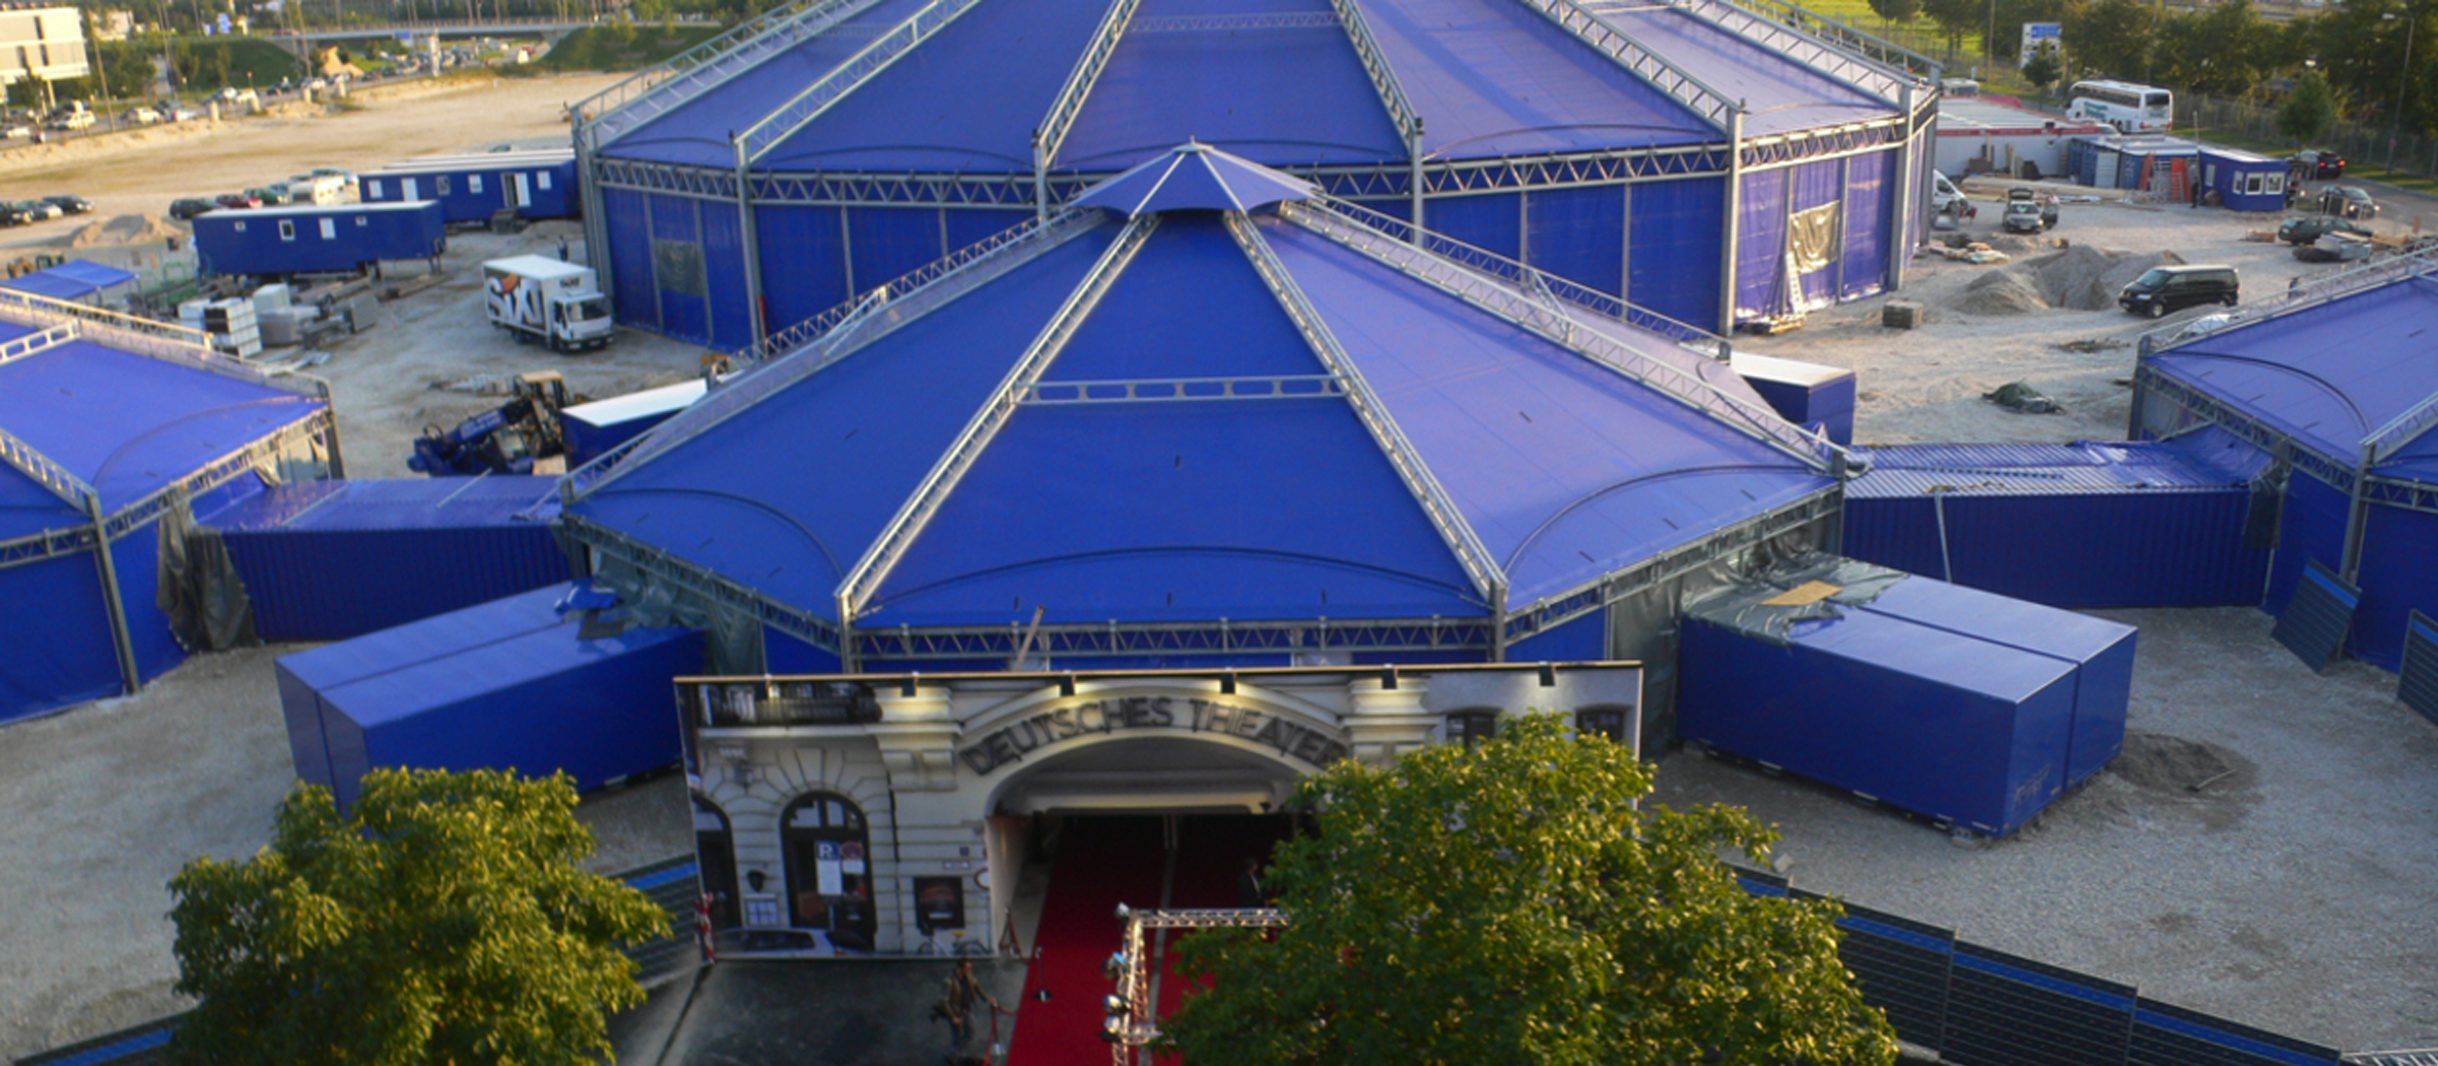 Zeltaufbau des Deutschen Theaters währendd der Sanierung